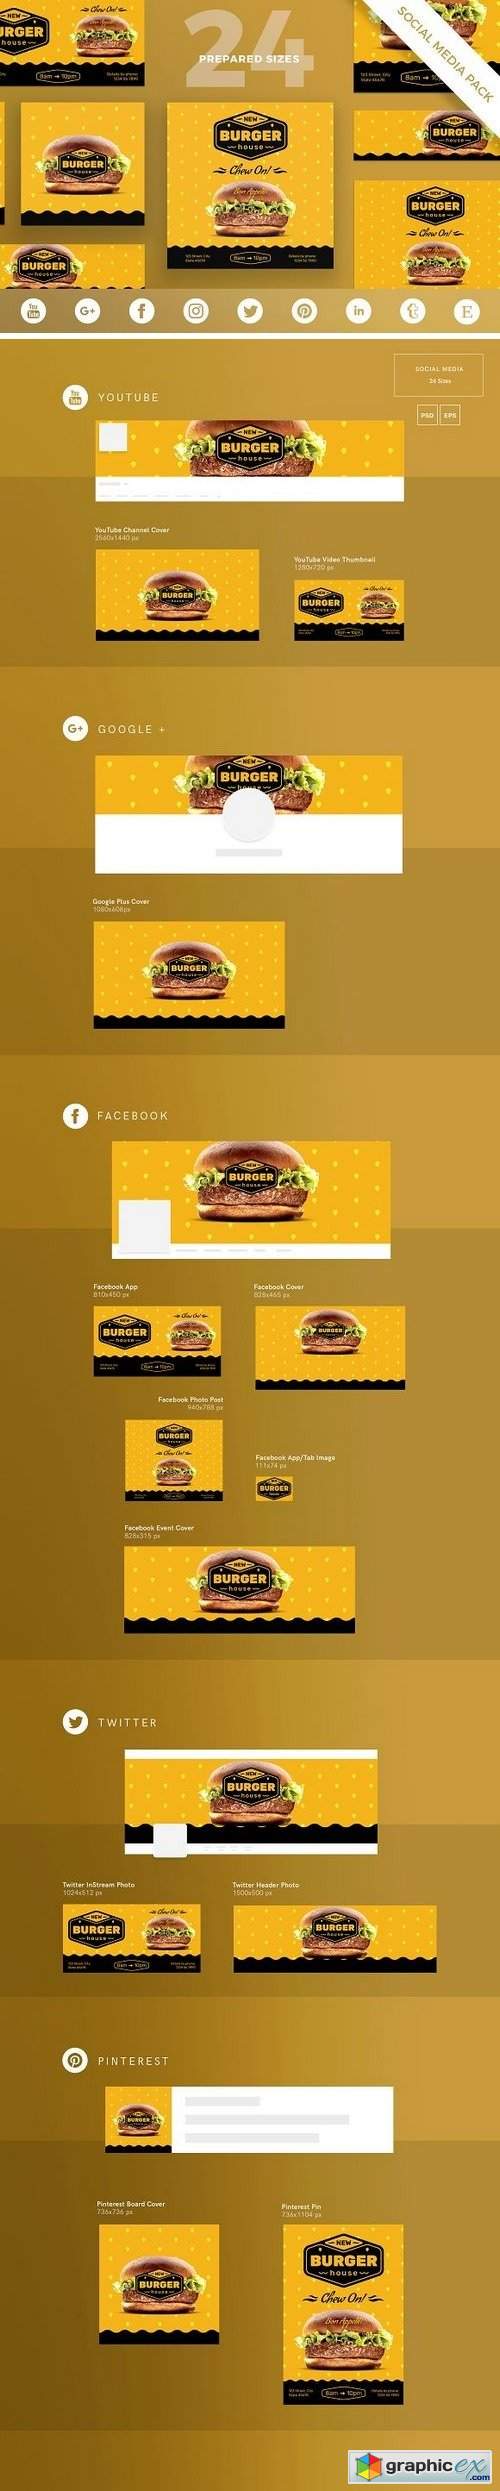 Burger House Social Media Pack